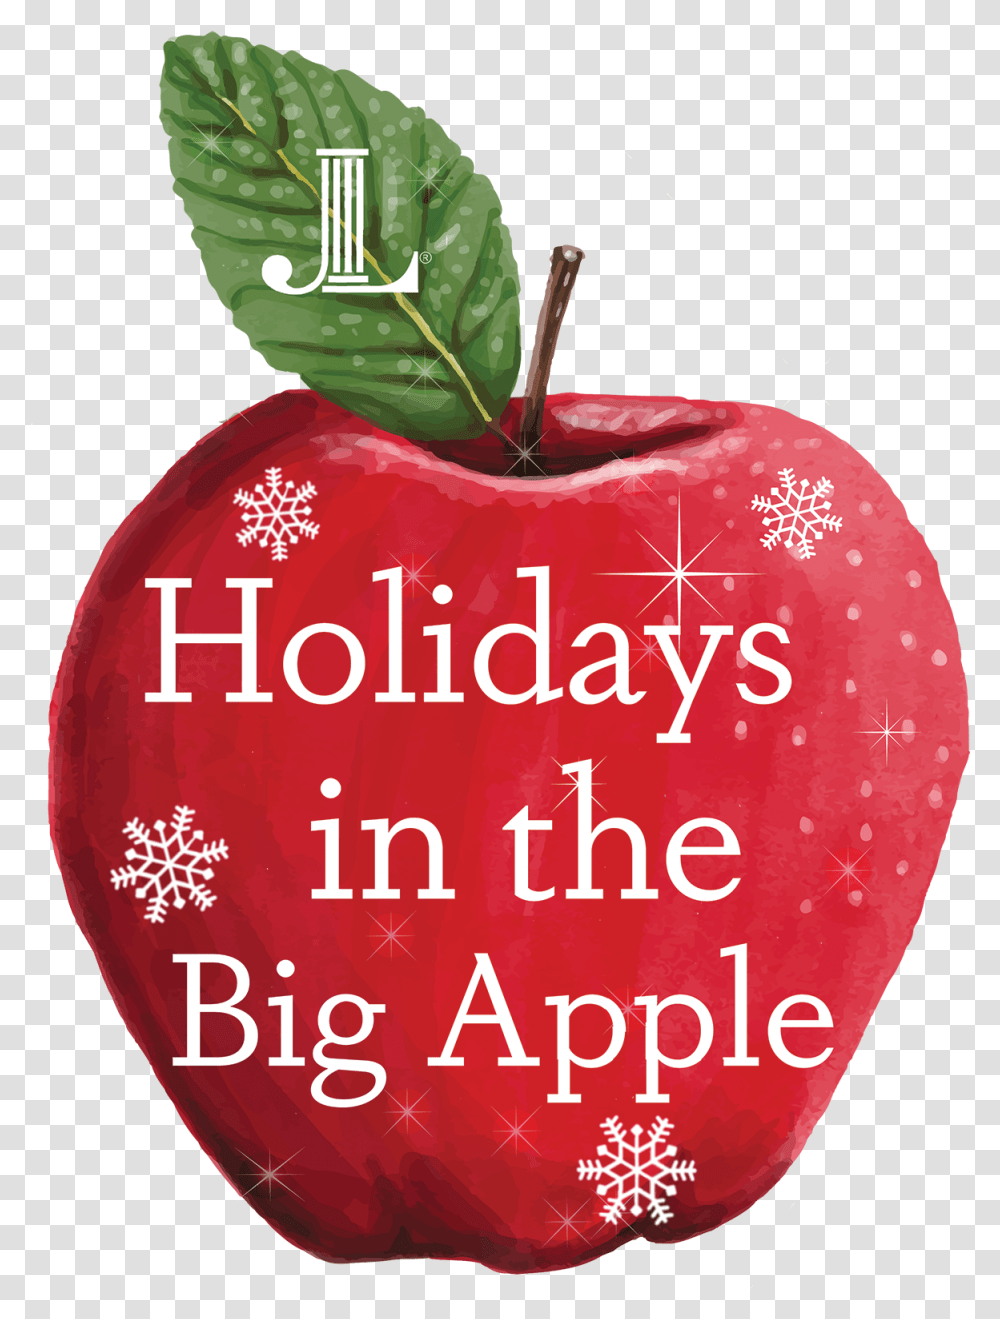 Big Apple, Plant, Fruit, Food Transparent Png